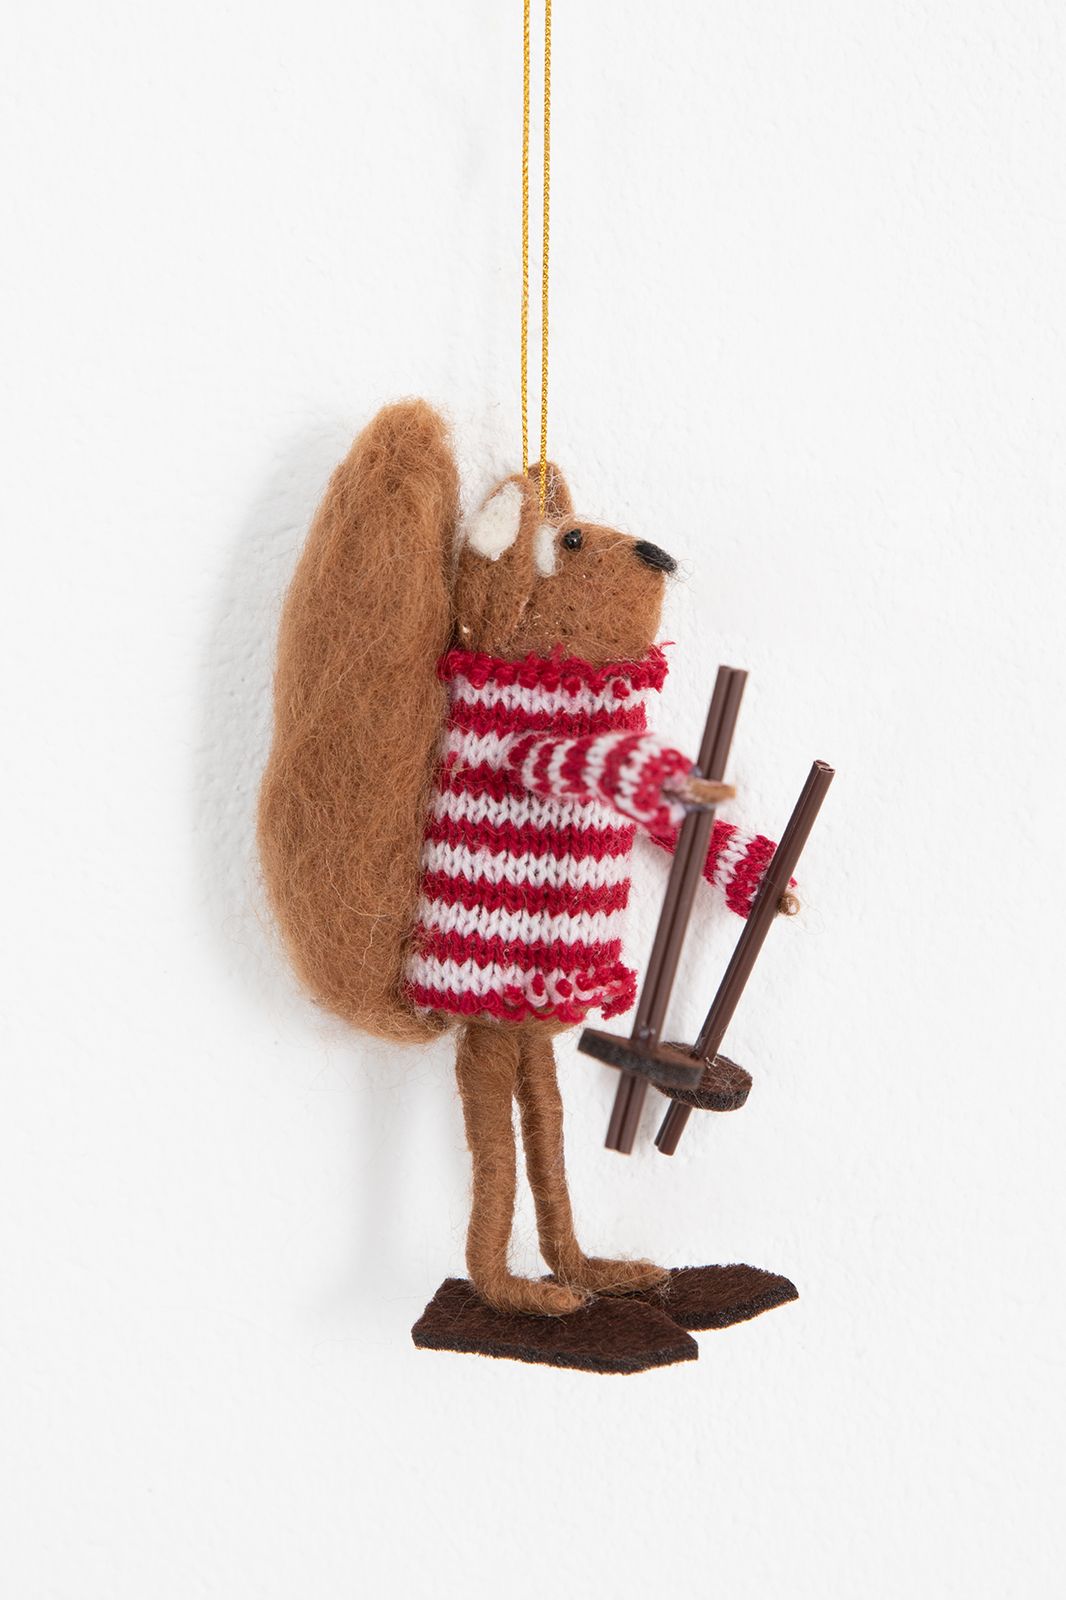 Kerst ornament vilten eekoorn op skis - Homeland | Sissy-Boy